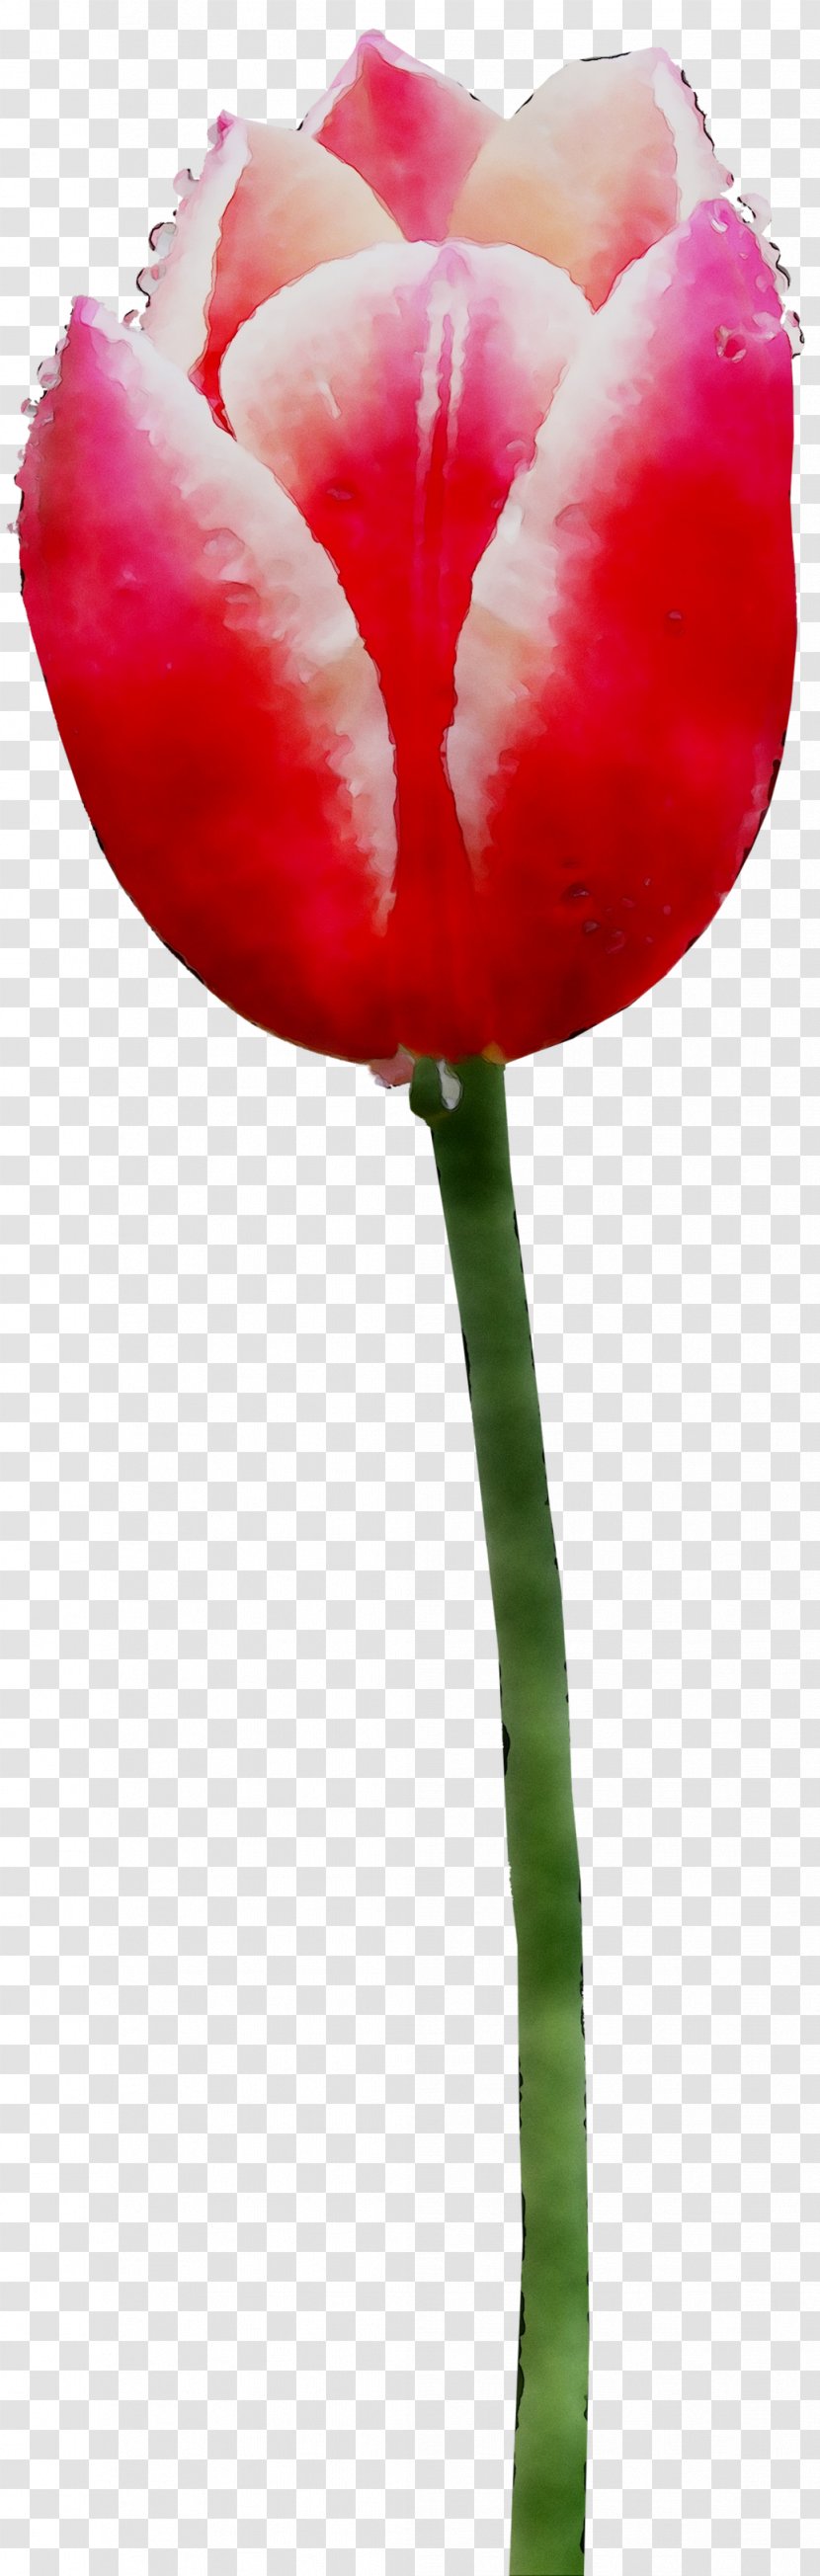 Tulip Plant Stem Cut Flowers Petal - Poppy Family Transparent PNG